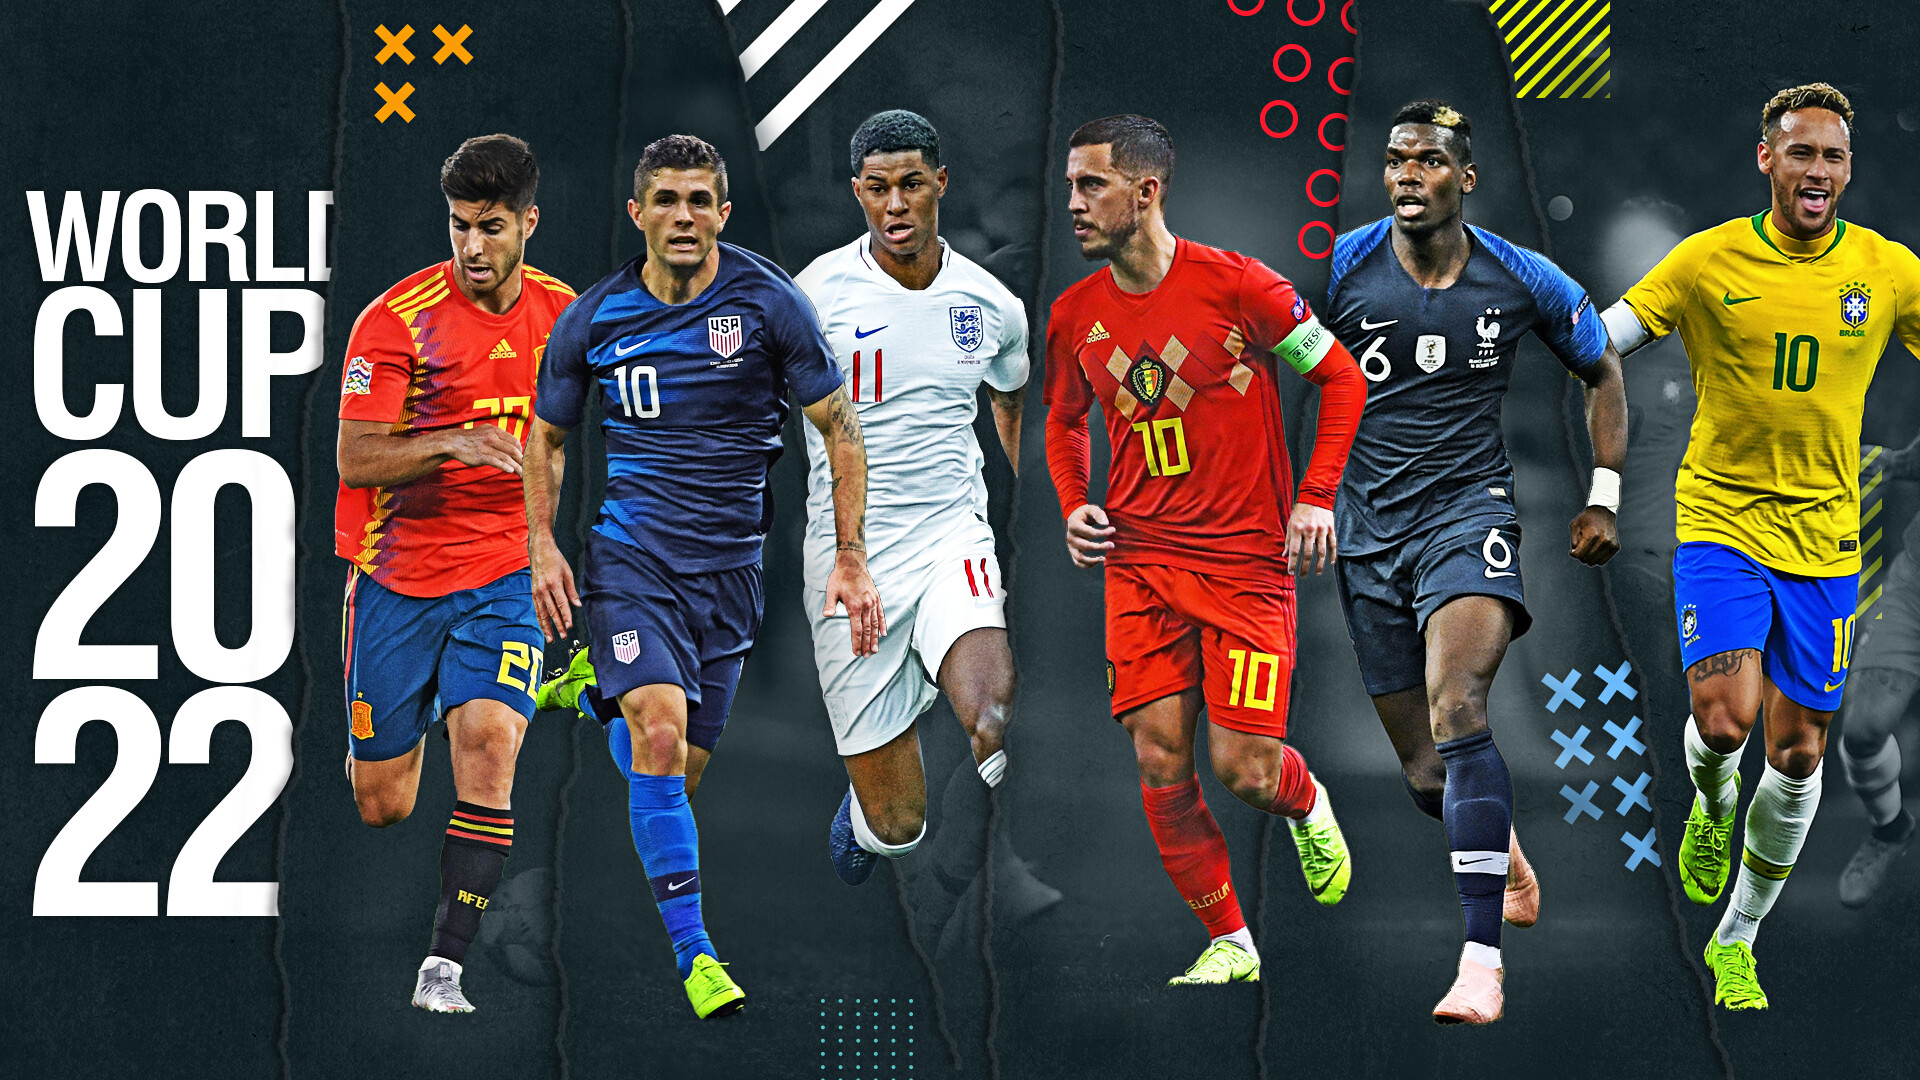 2022 FIFA World Cup, Favoriten zum Gewinnen, Frankreich vs Brasilien, Spanien vs England, 1920x1080 Full HD Desktop